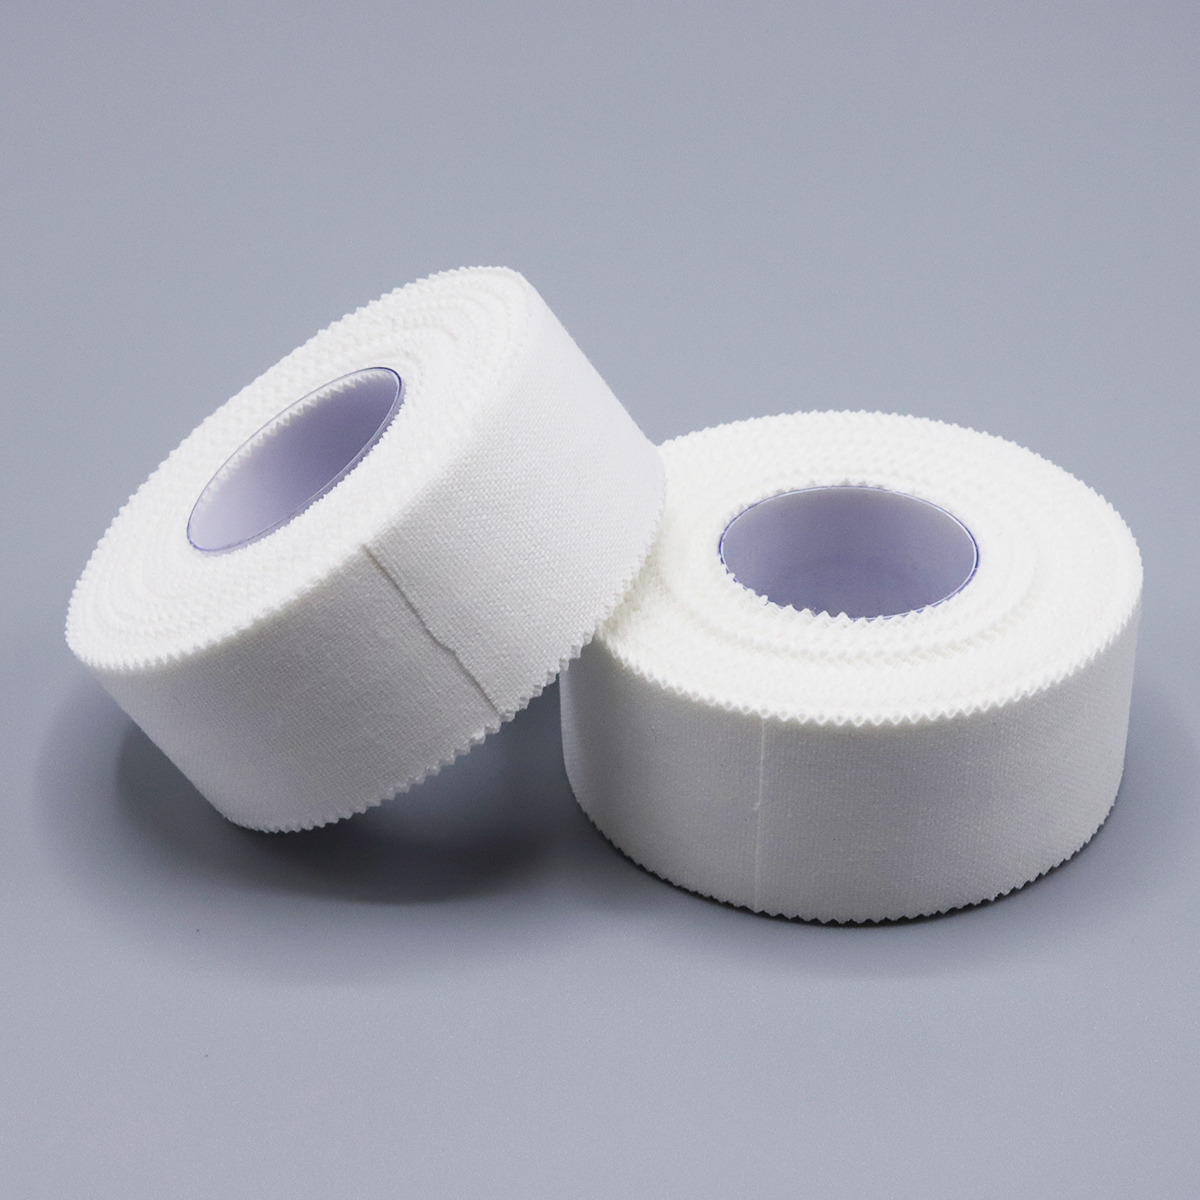 Zinc Oxide Adhesive Tape (2.5cm x 9m)